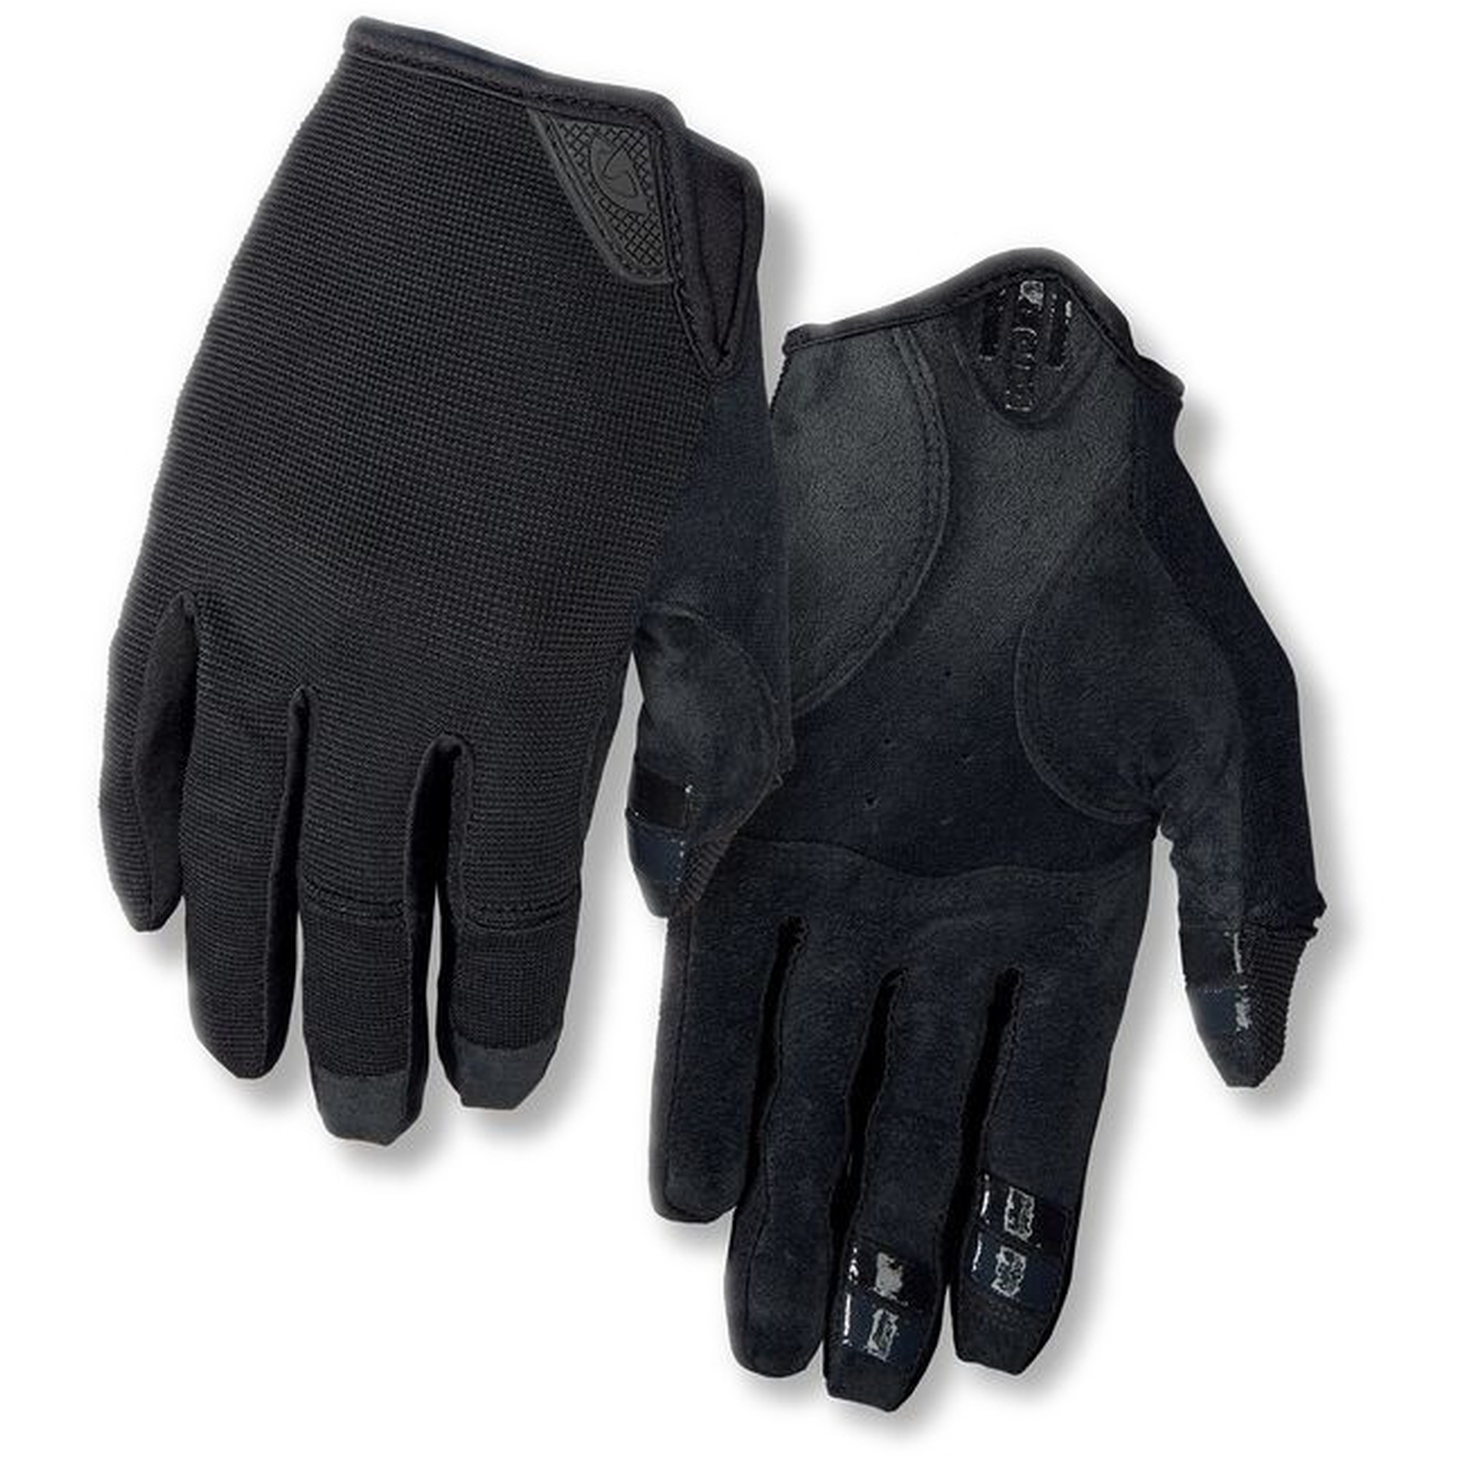 Produktbild von Giro DND Handschuhe - schwarz